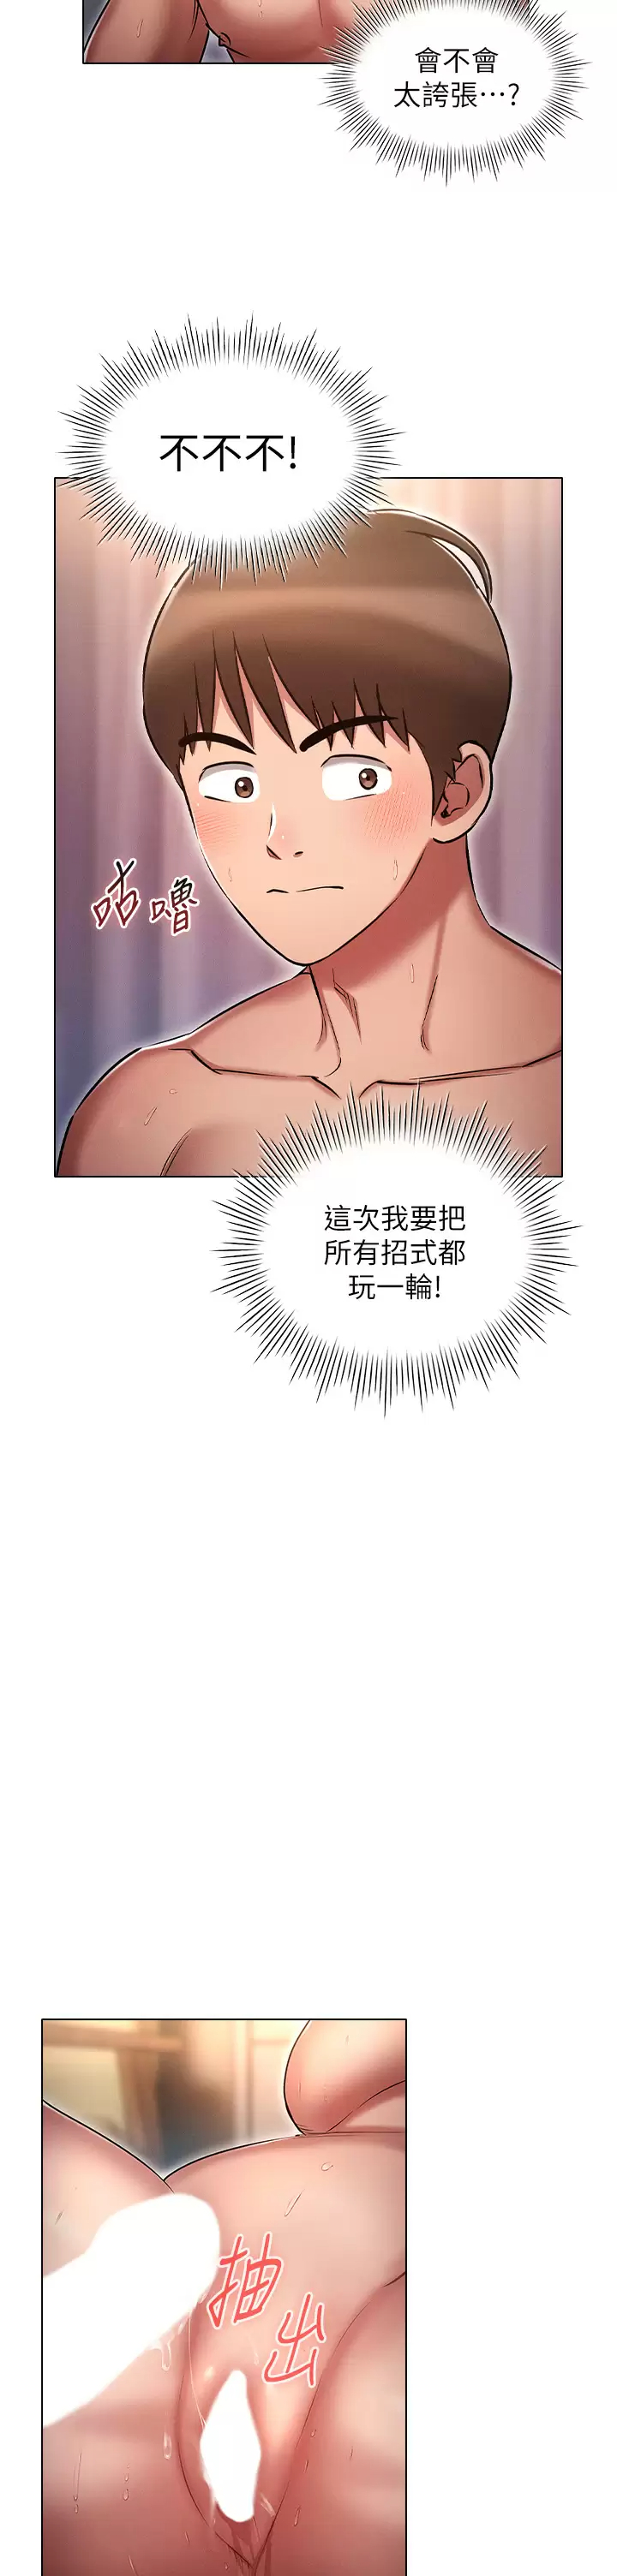 韩国污漫画 魯蛇的多重宇宙 第14话 挑战窗边暴露性爱! 26